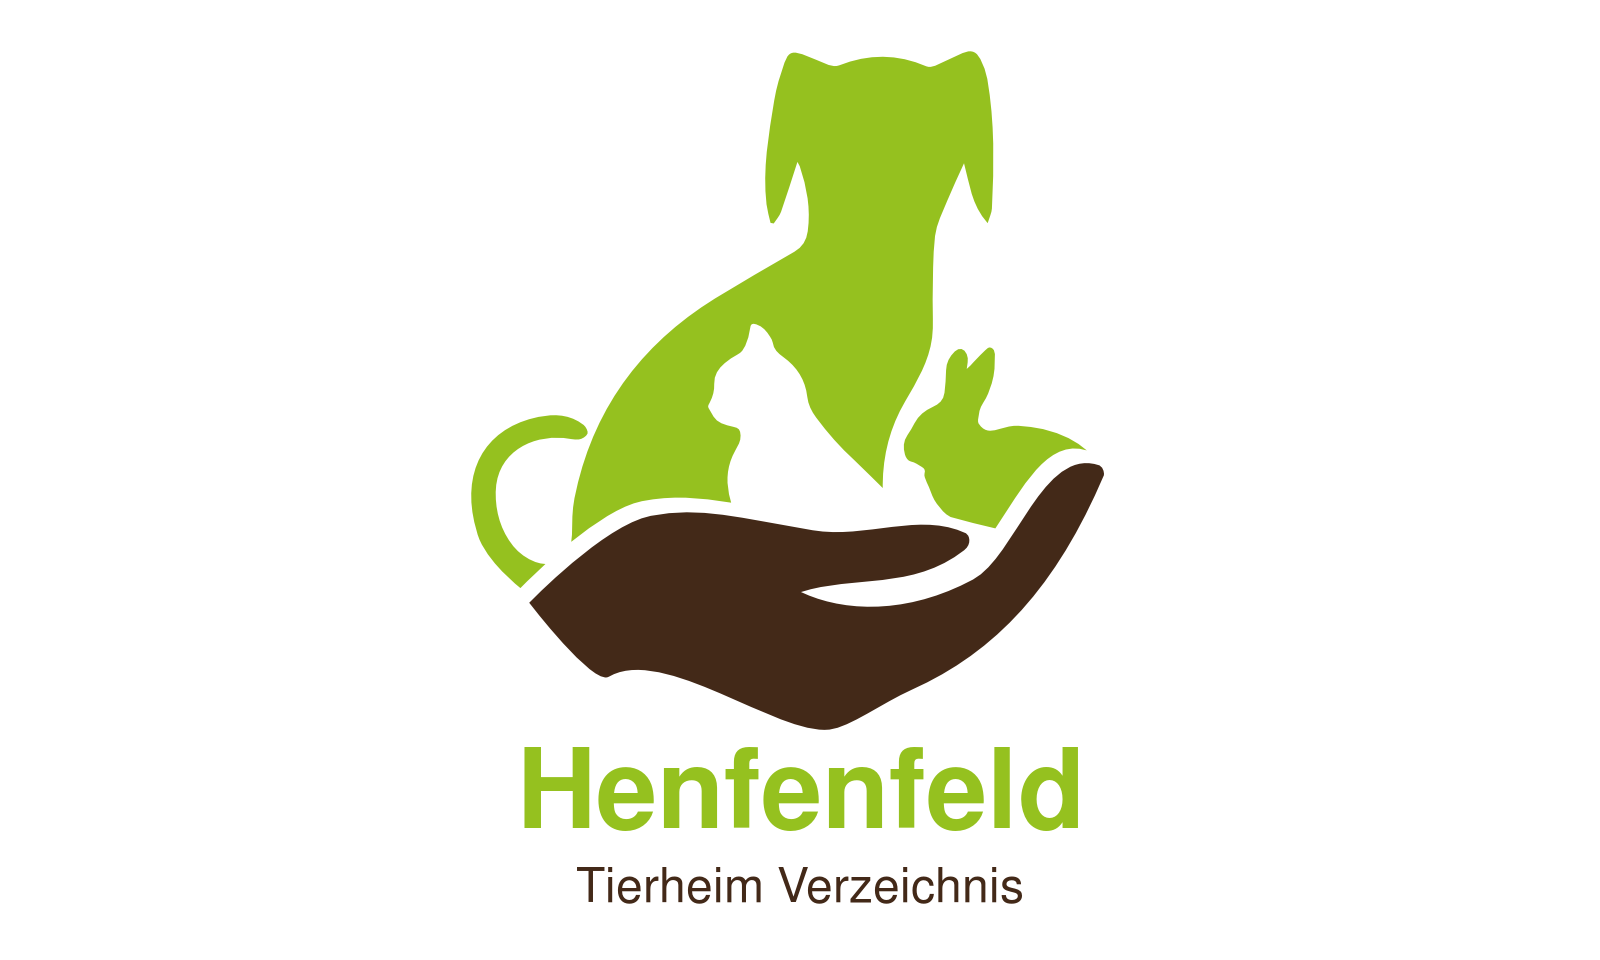 Tierheim Henfenfeld